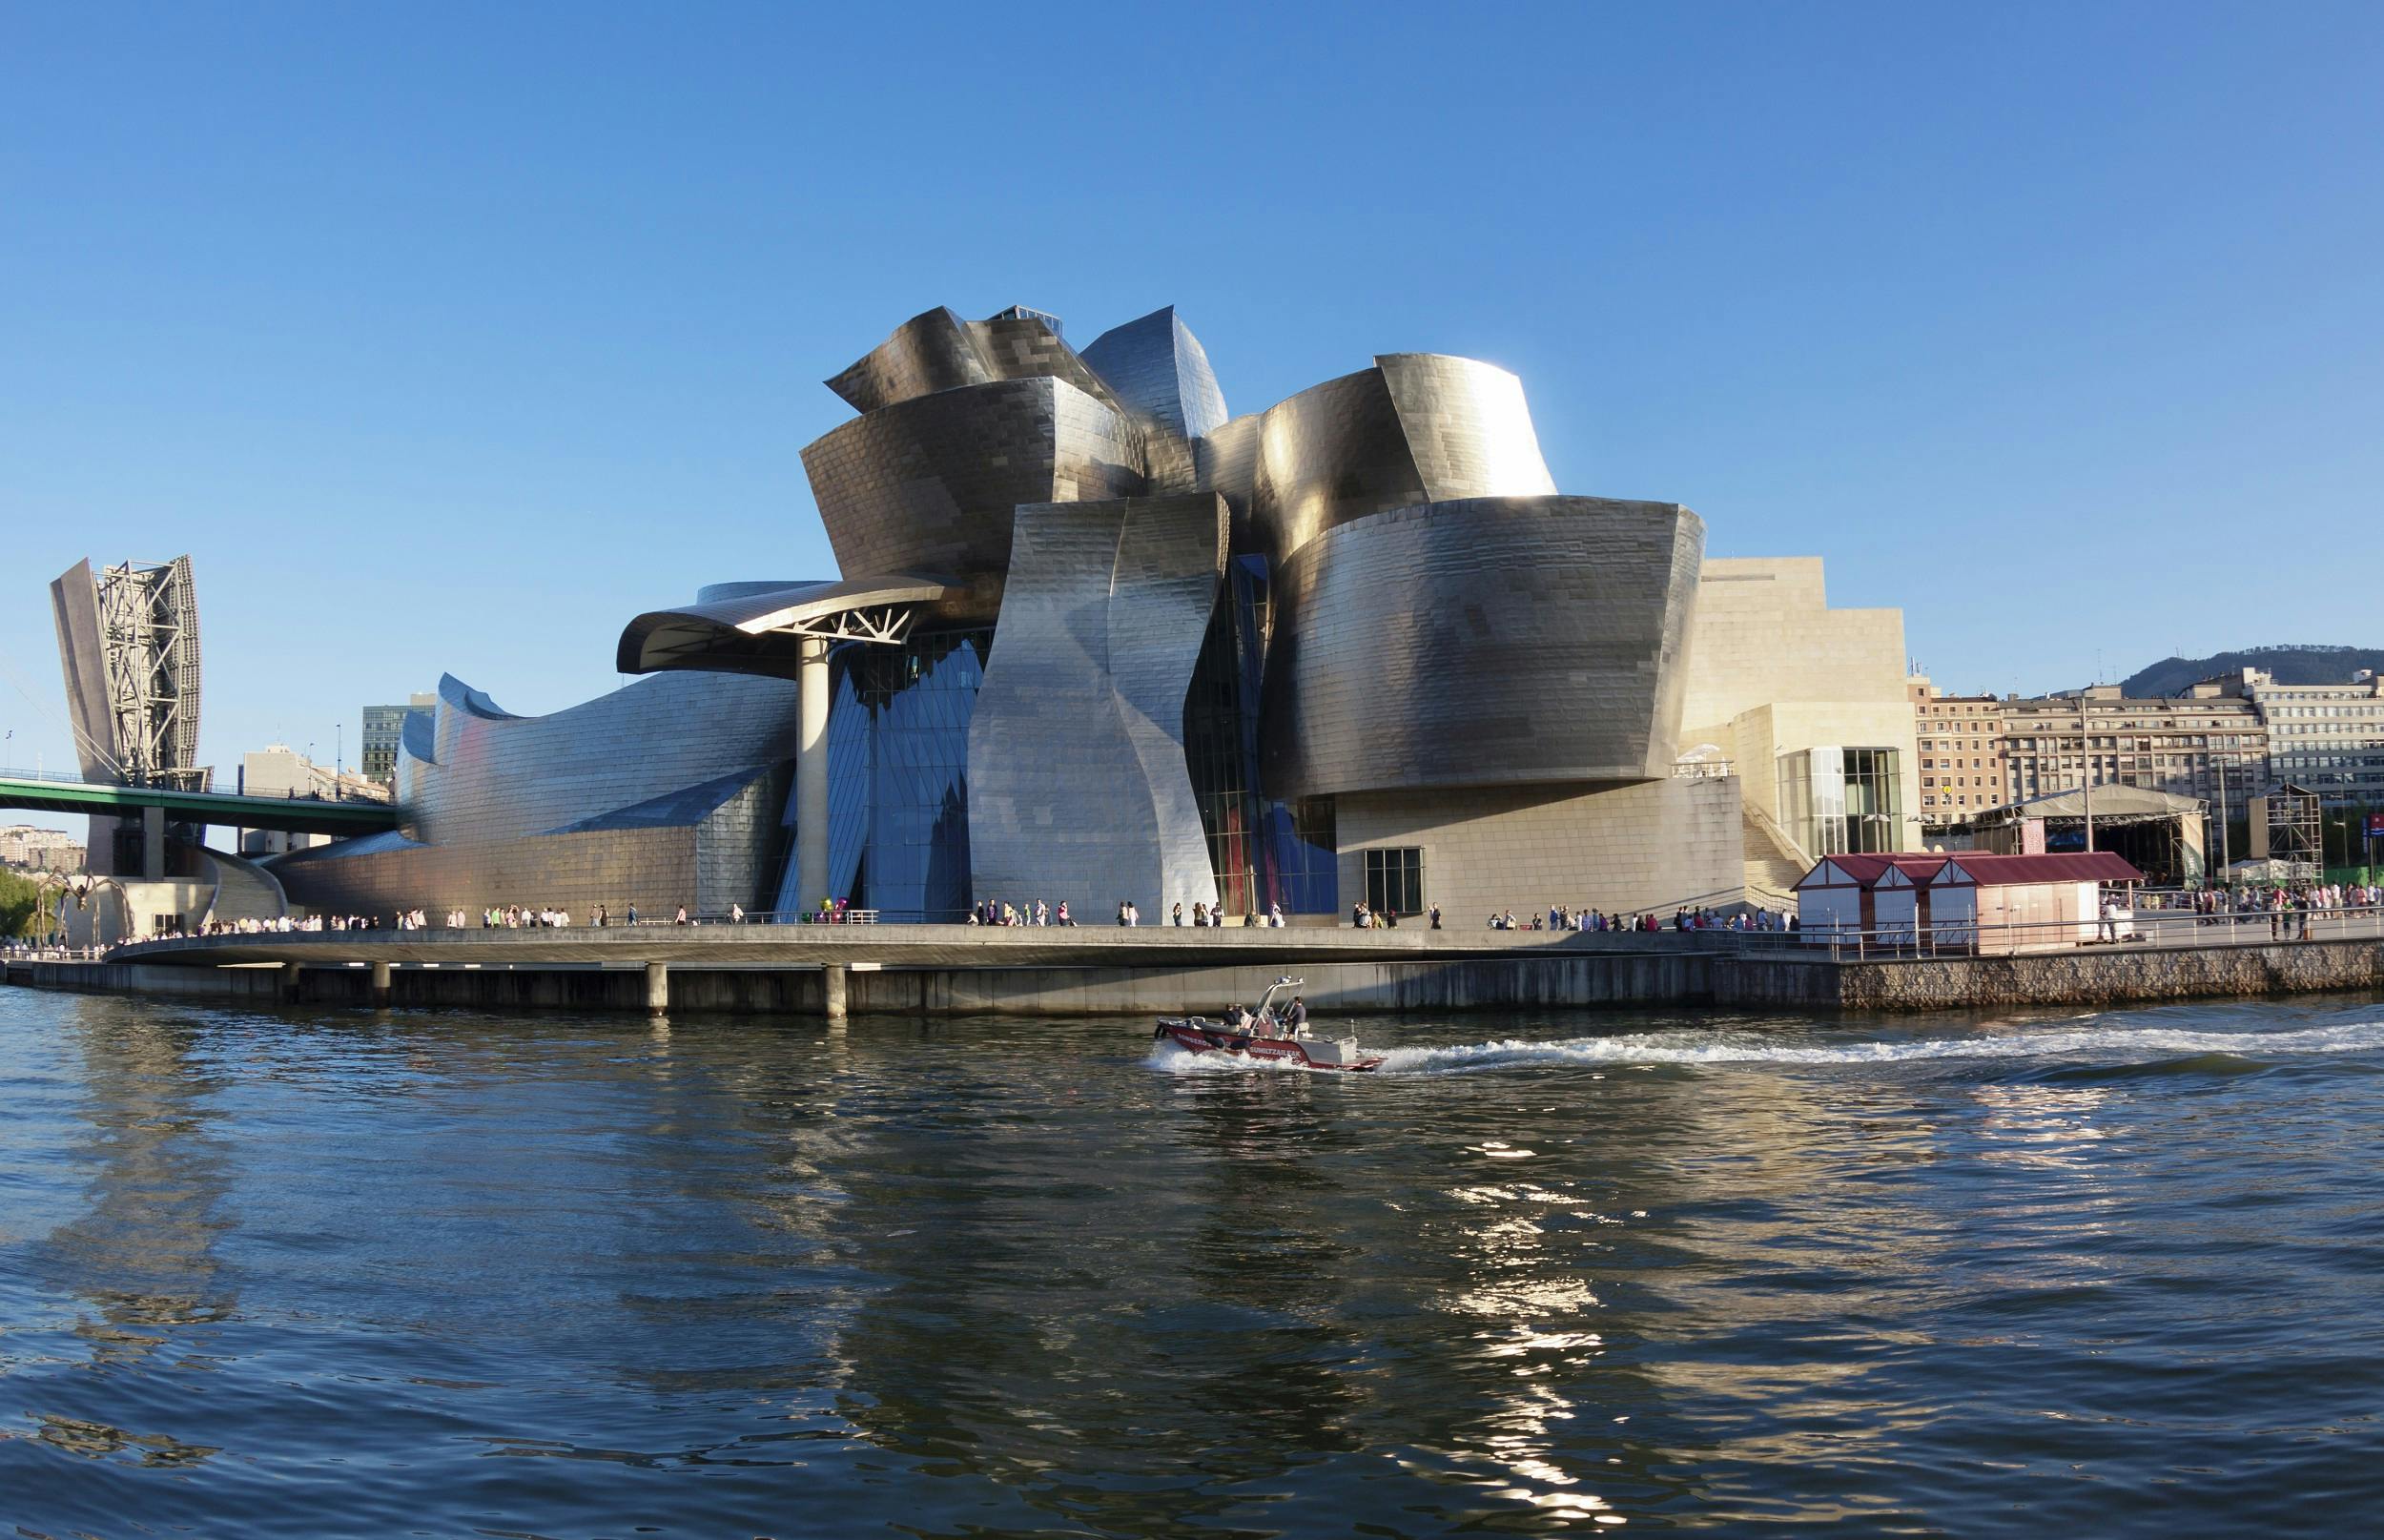 Visita ao Museu Guggenheim de Bilbao em espanhol